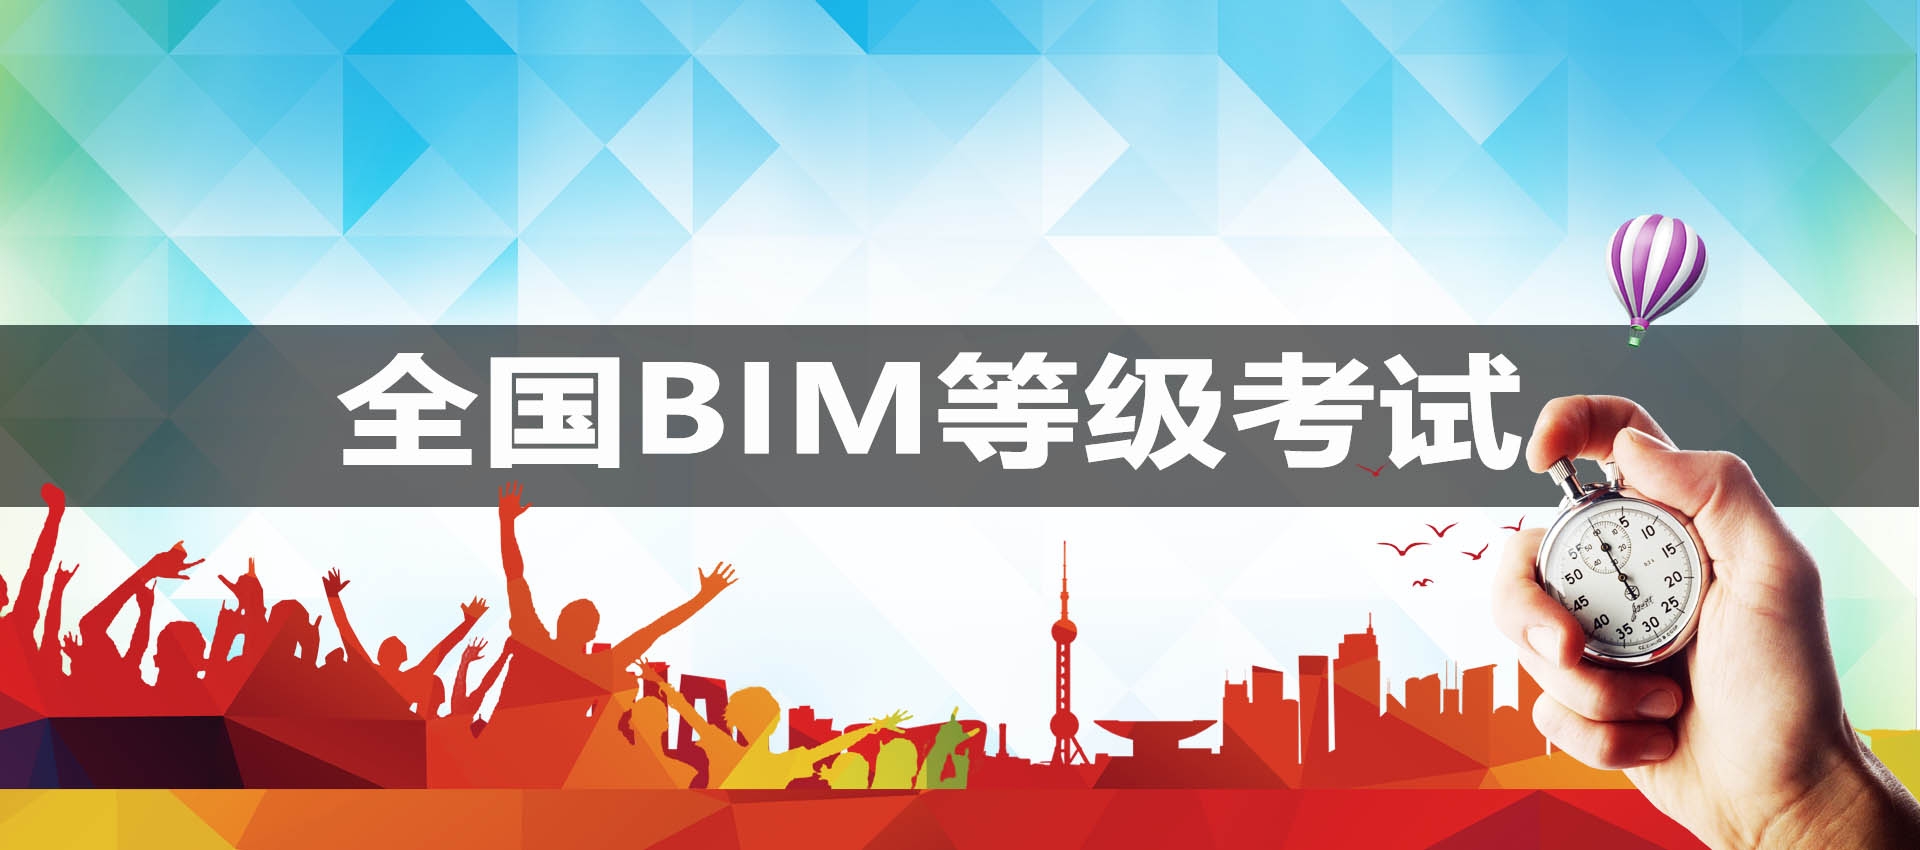 重慶中國圖學學會全國BIM技能等級考試